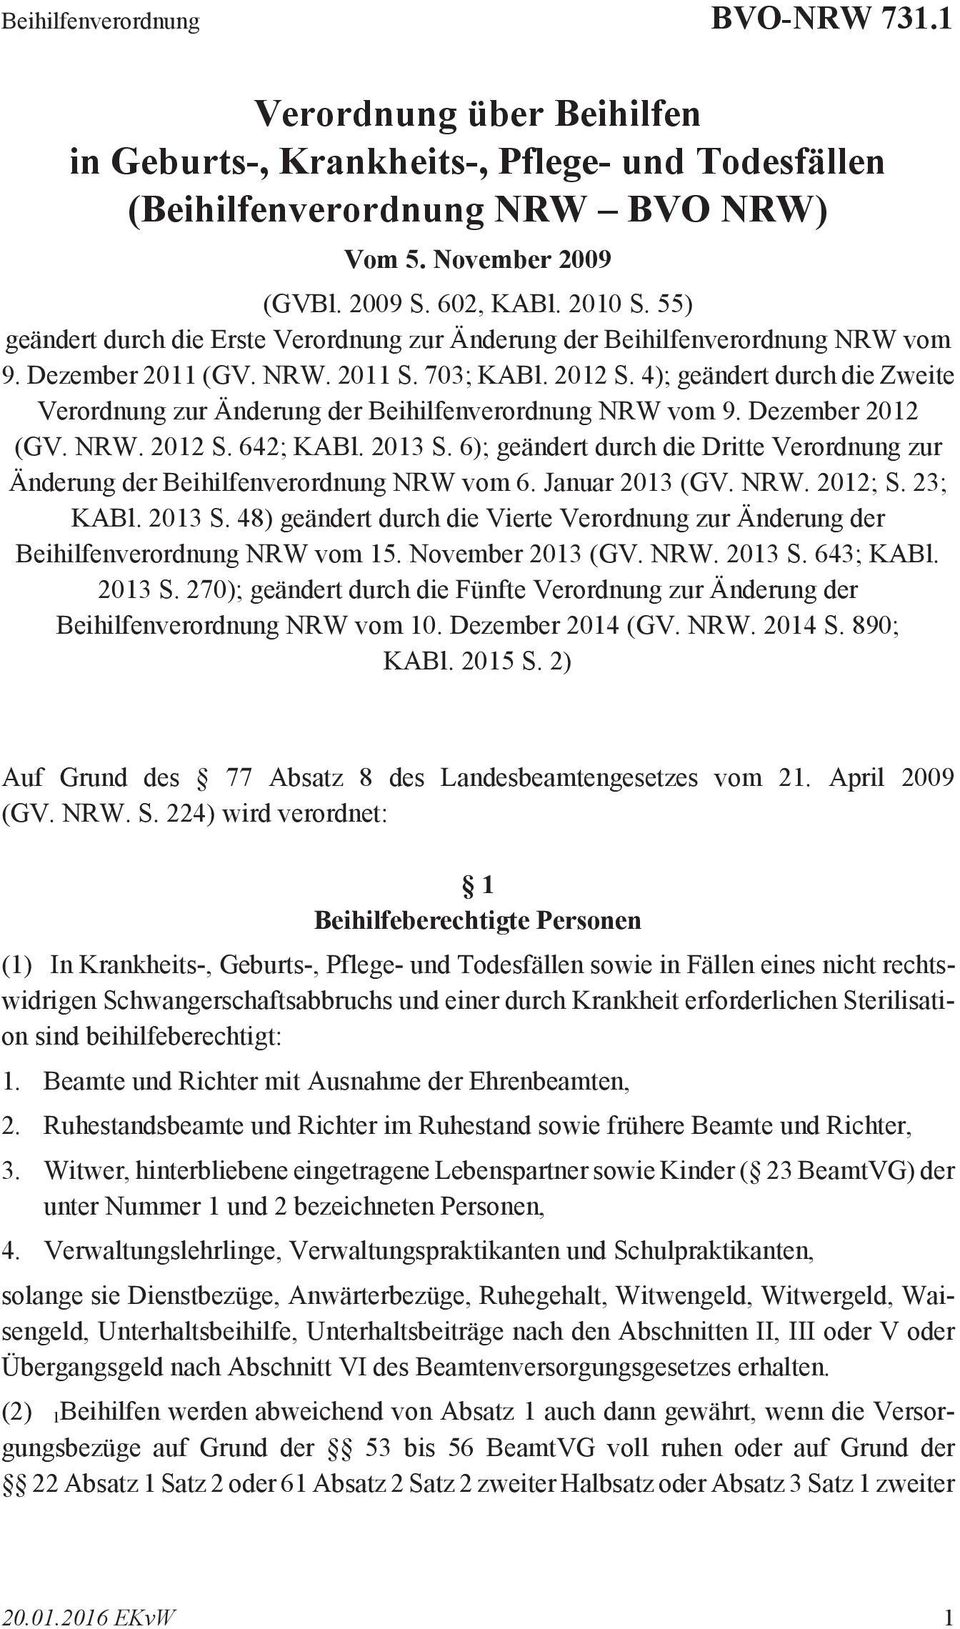 4); geändert durch die Zweite Verordnung zur Änderung der Beihilfenverordnung NRW vom 9. Dezember 2012 (GV. NRW. 2012 S. 642; KABl. 2013 S.